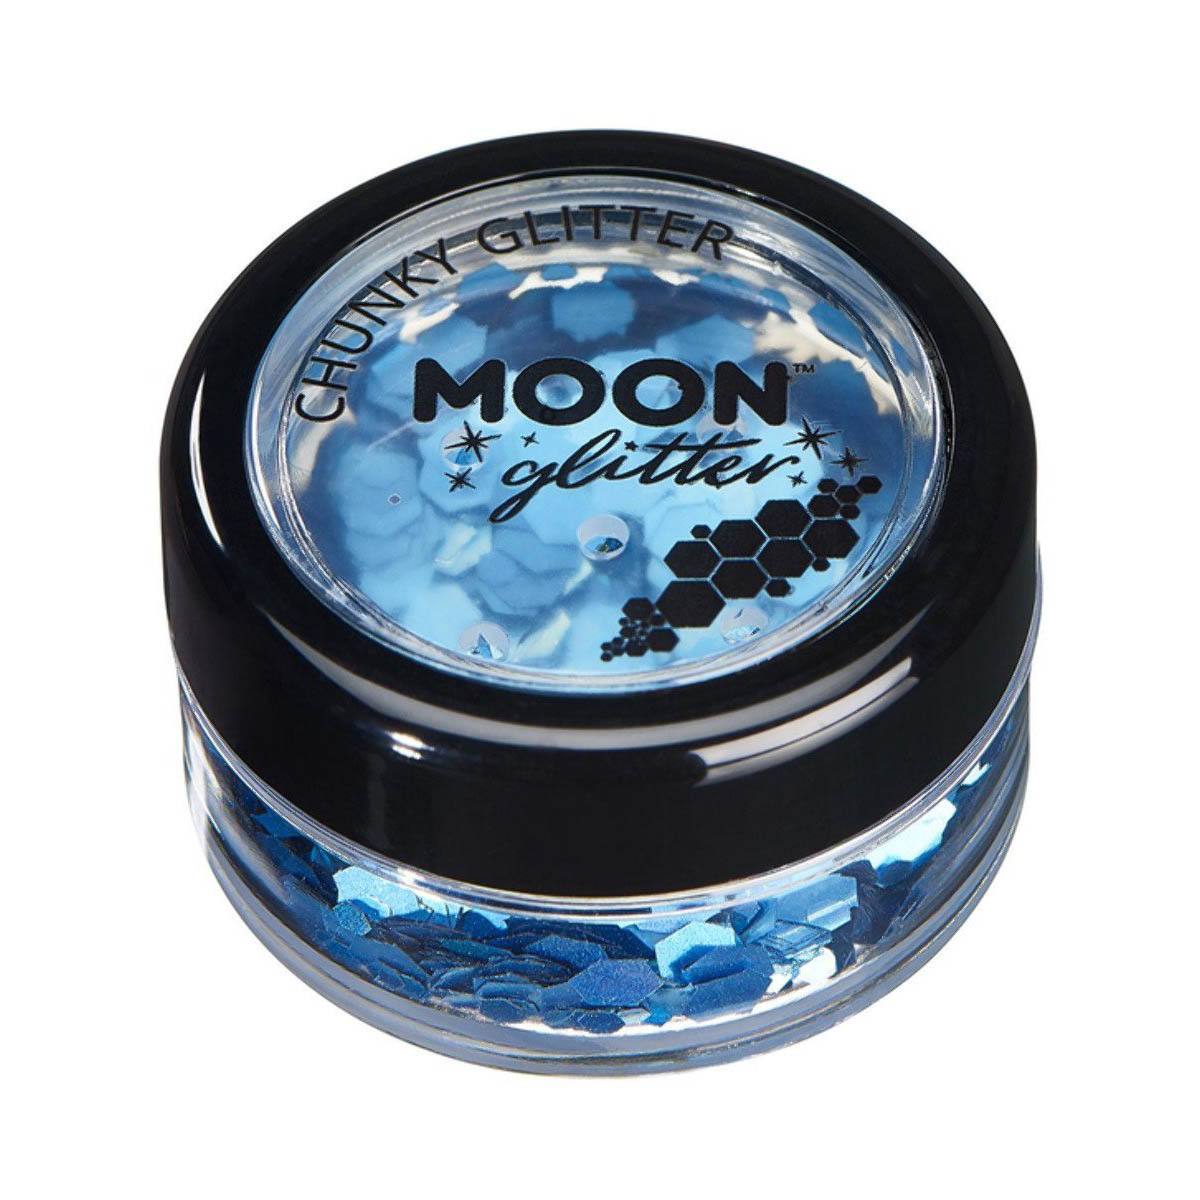 Läs mer om Moon glitter i burk, chunky holografisk 3g Blå